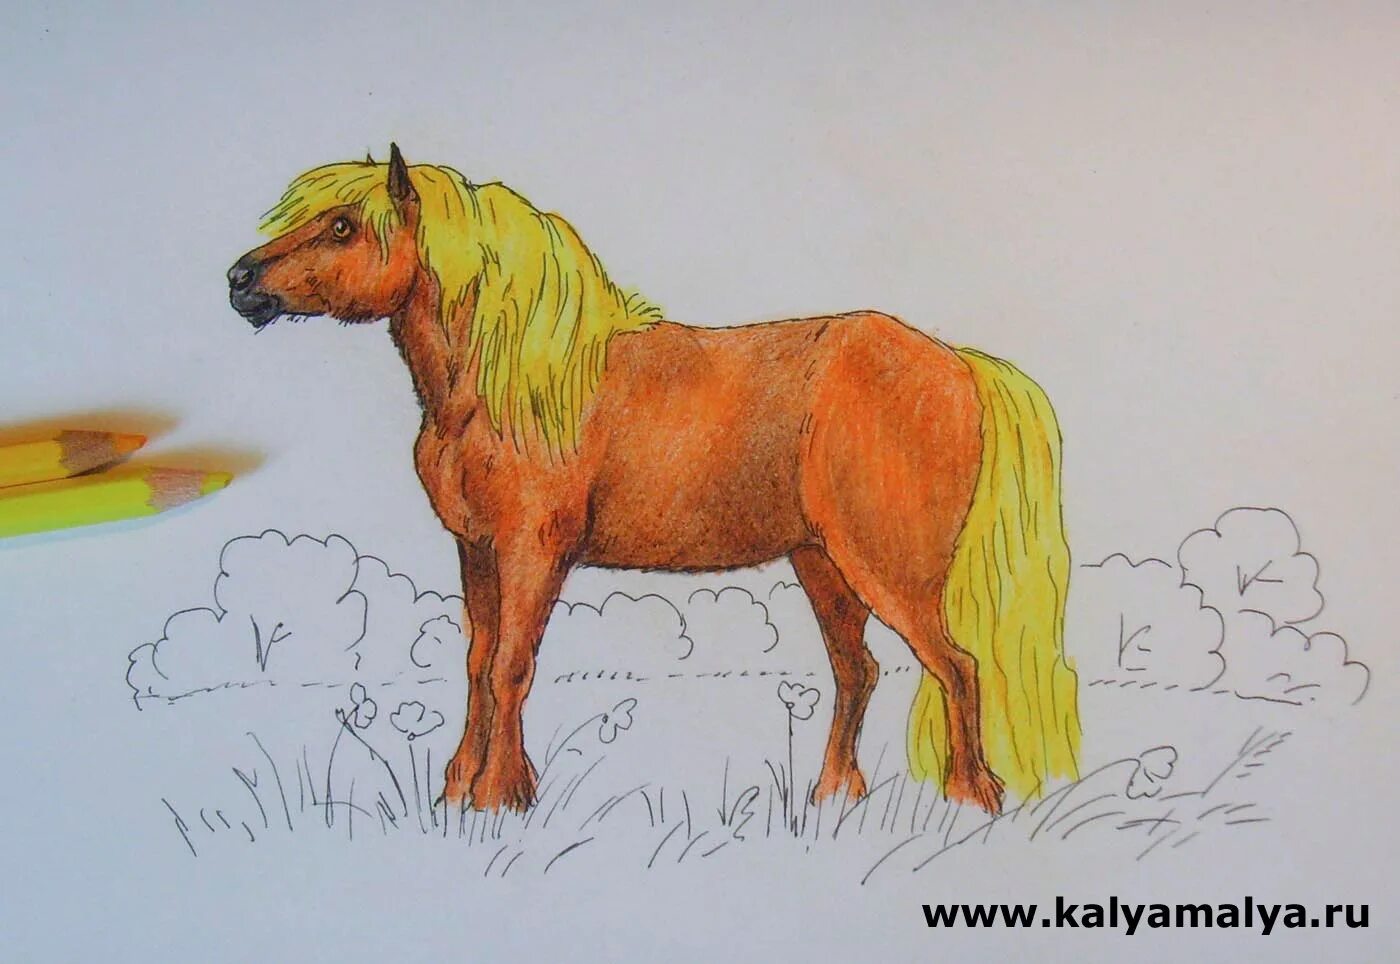 Конь с нераскрашенным хвостом. Конь с розовой гривой рисунок. Конь с не раскрашеным хвостом. Иллюстрация к рассказу конь с розовой гривой.